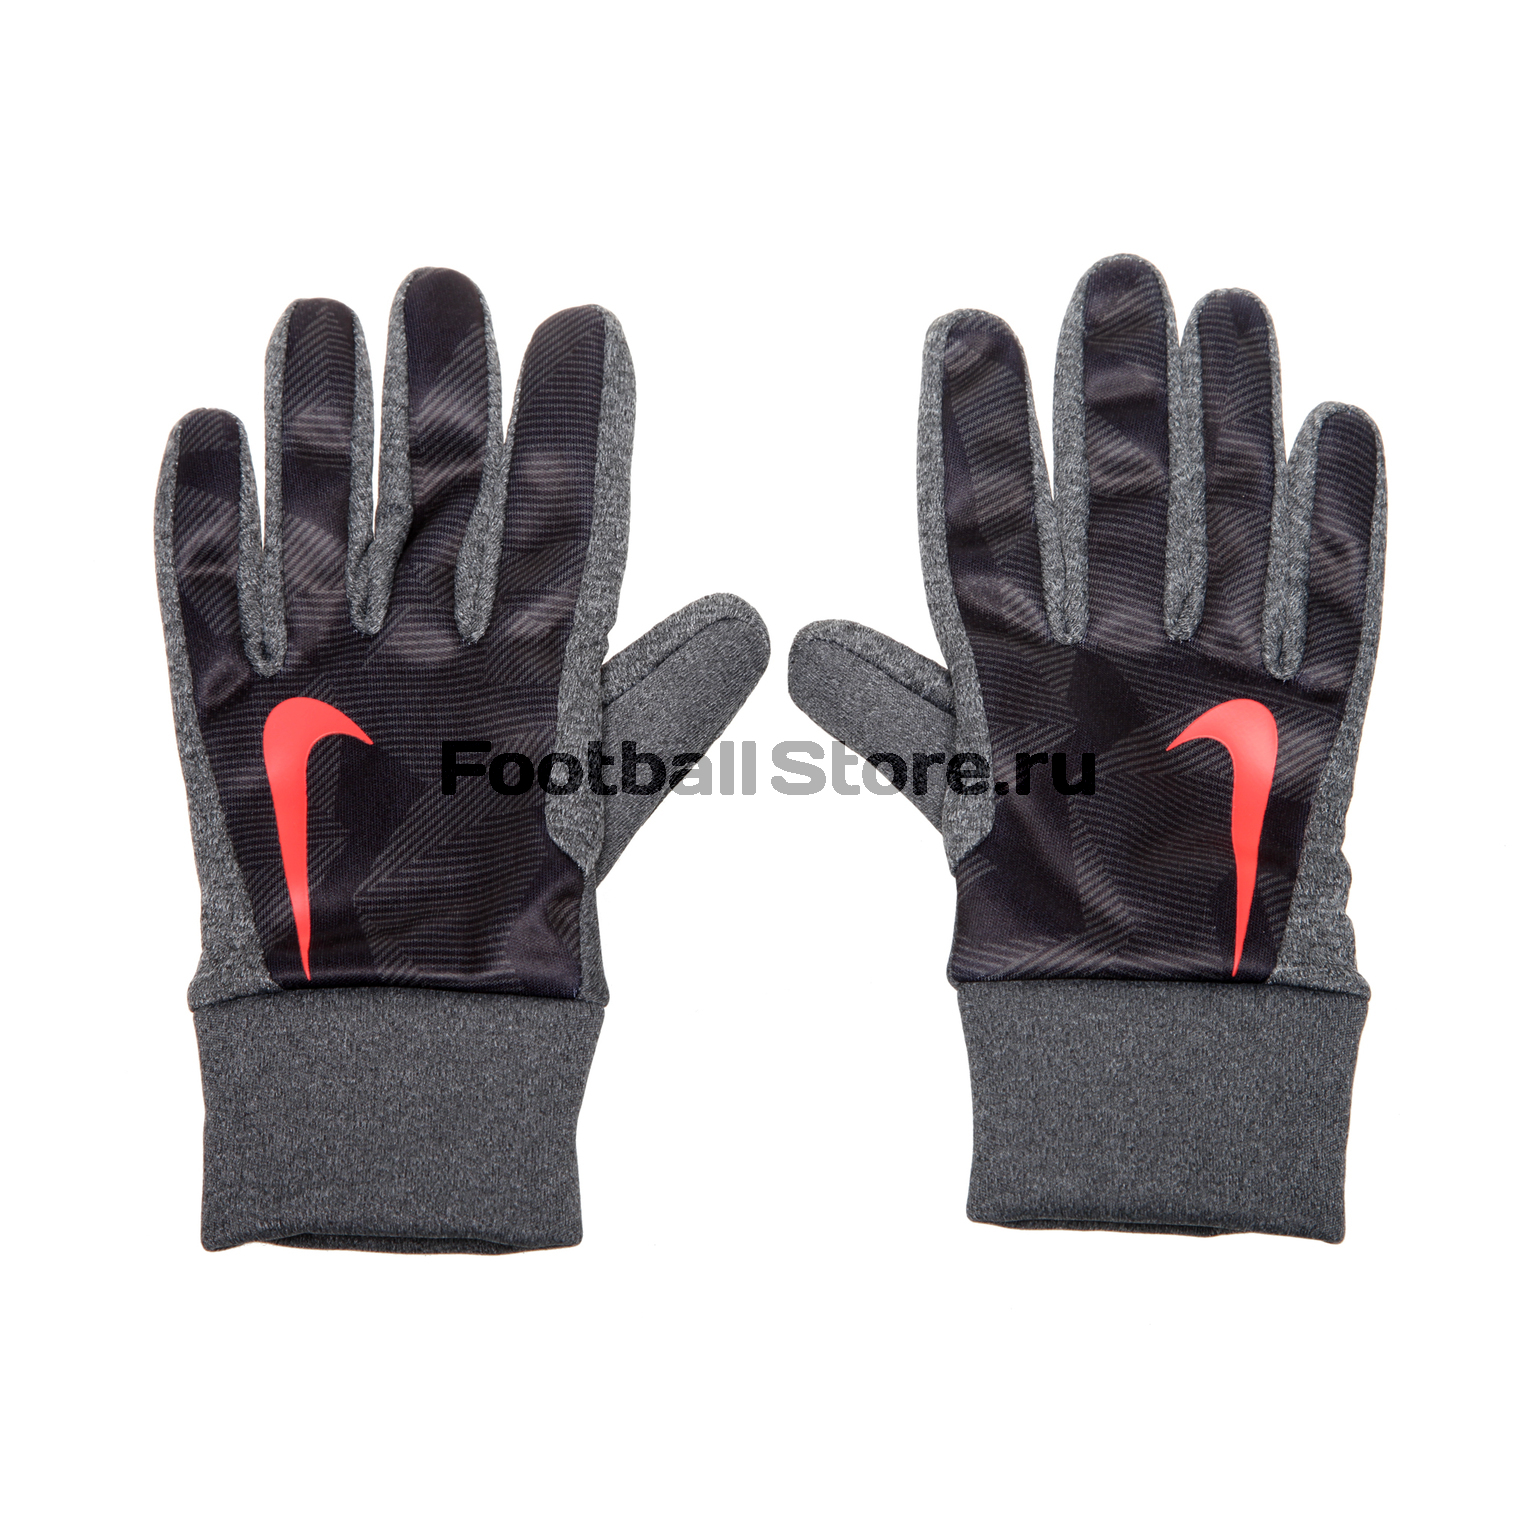 Детские тренировочные перчатки Nike HyperWarm GS0322-011